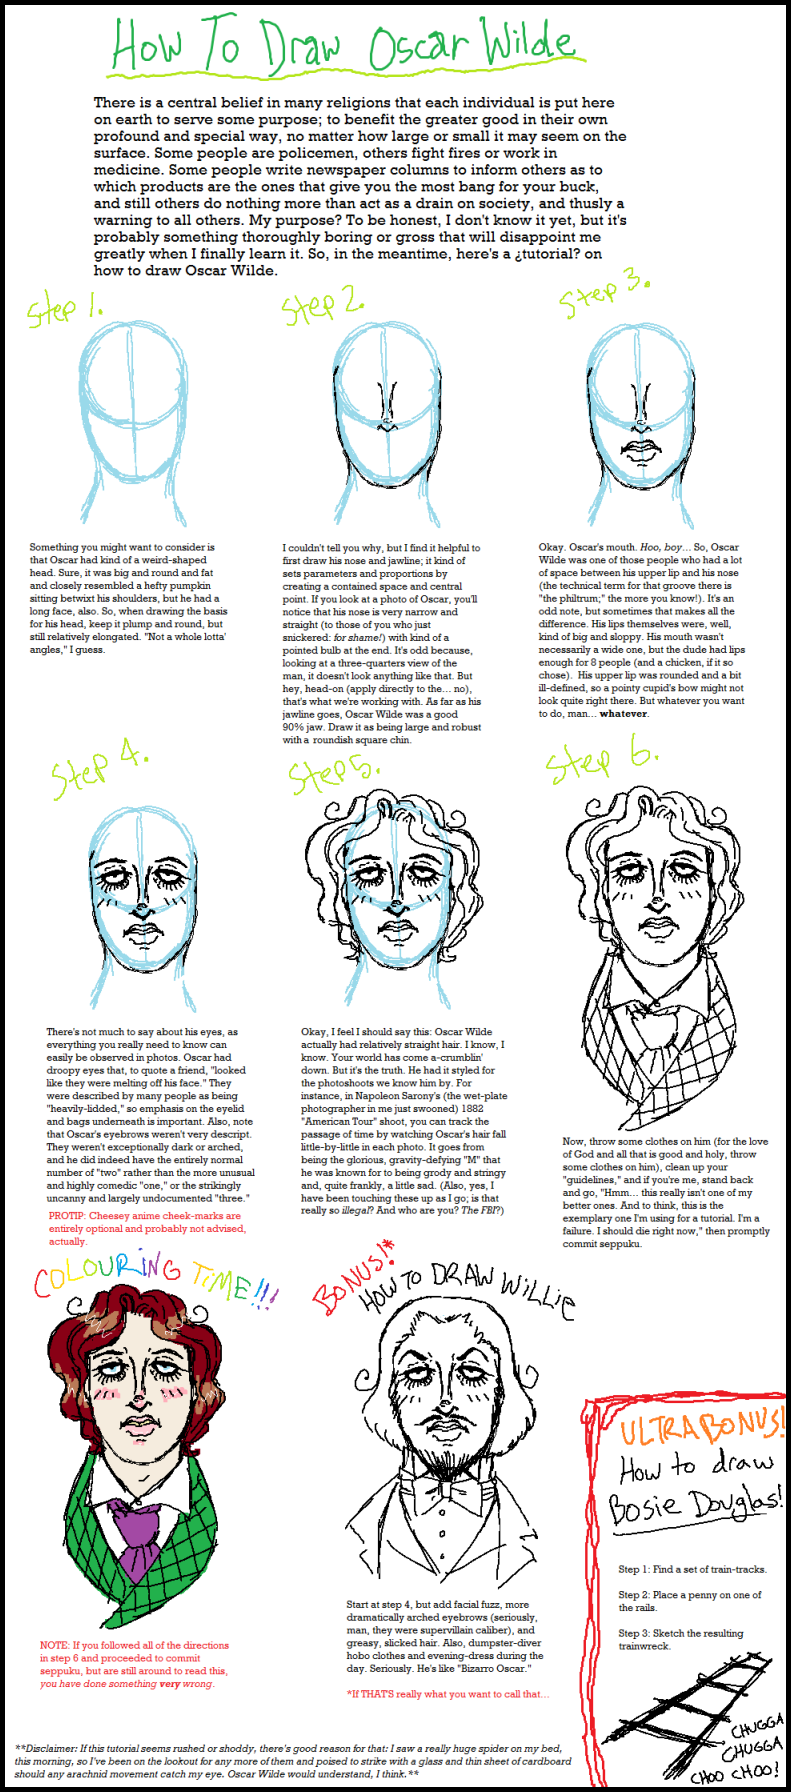 'How to Draw Oscar Wilde'